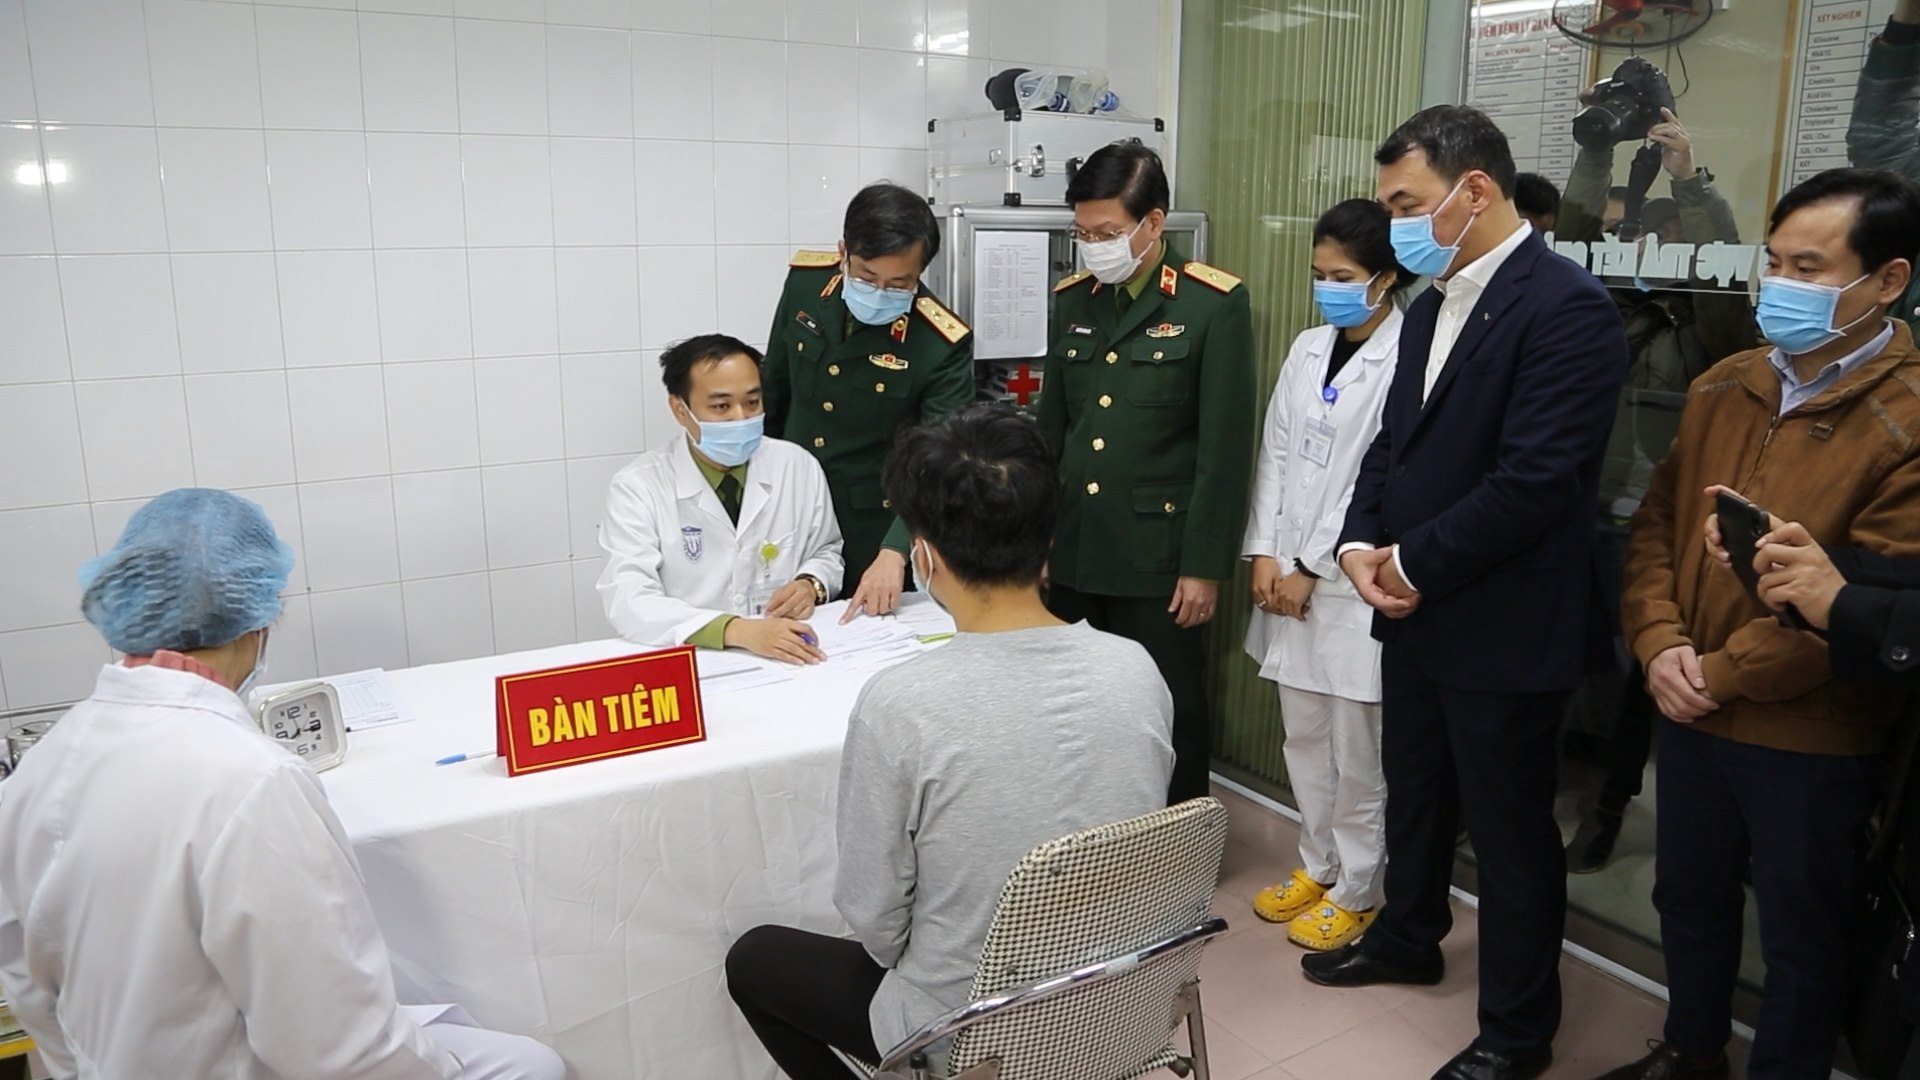 Tin nhanh - 3 tình nguyện viên đầu tiên tiêm thử vắc xin Covid-19 tại Việt Nam